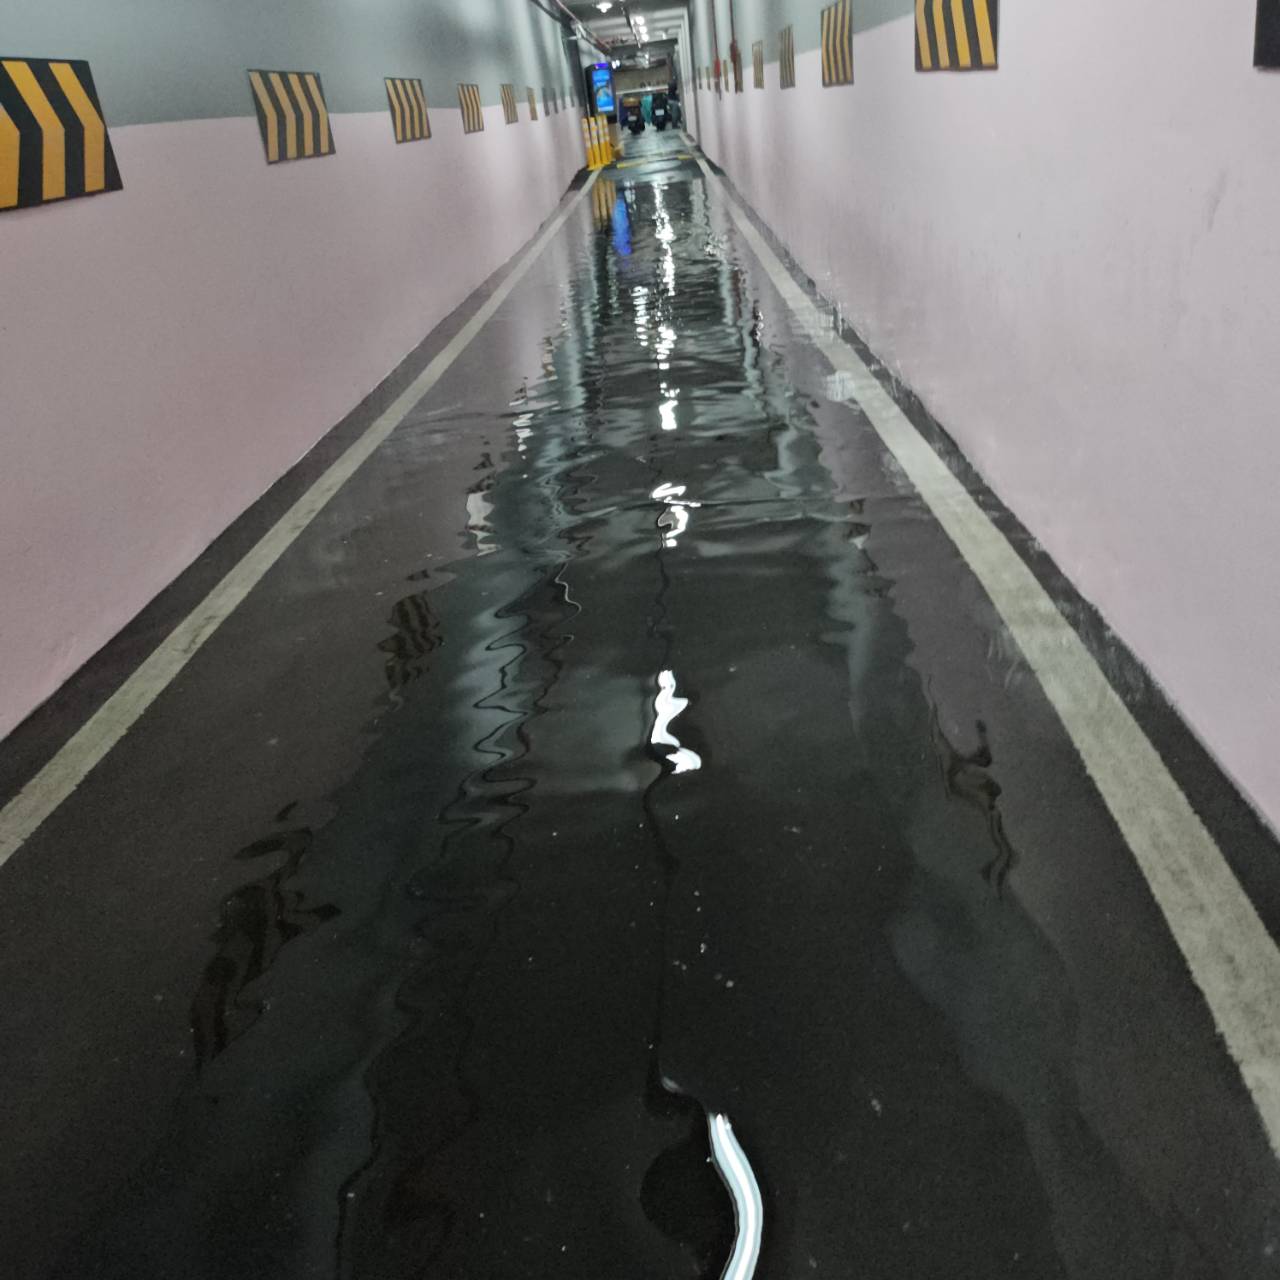 国民党台北市议员李柏毅接获陈情，二殡的机车停车场车道经过豪雨竟淹水。图／国民党台北市议员李柏毅提供